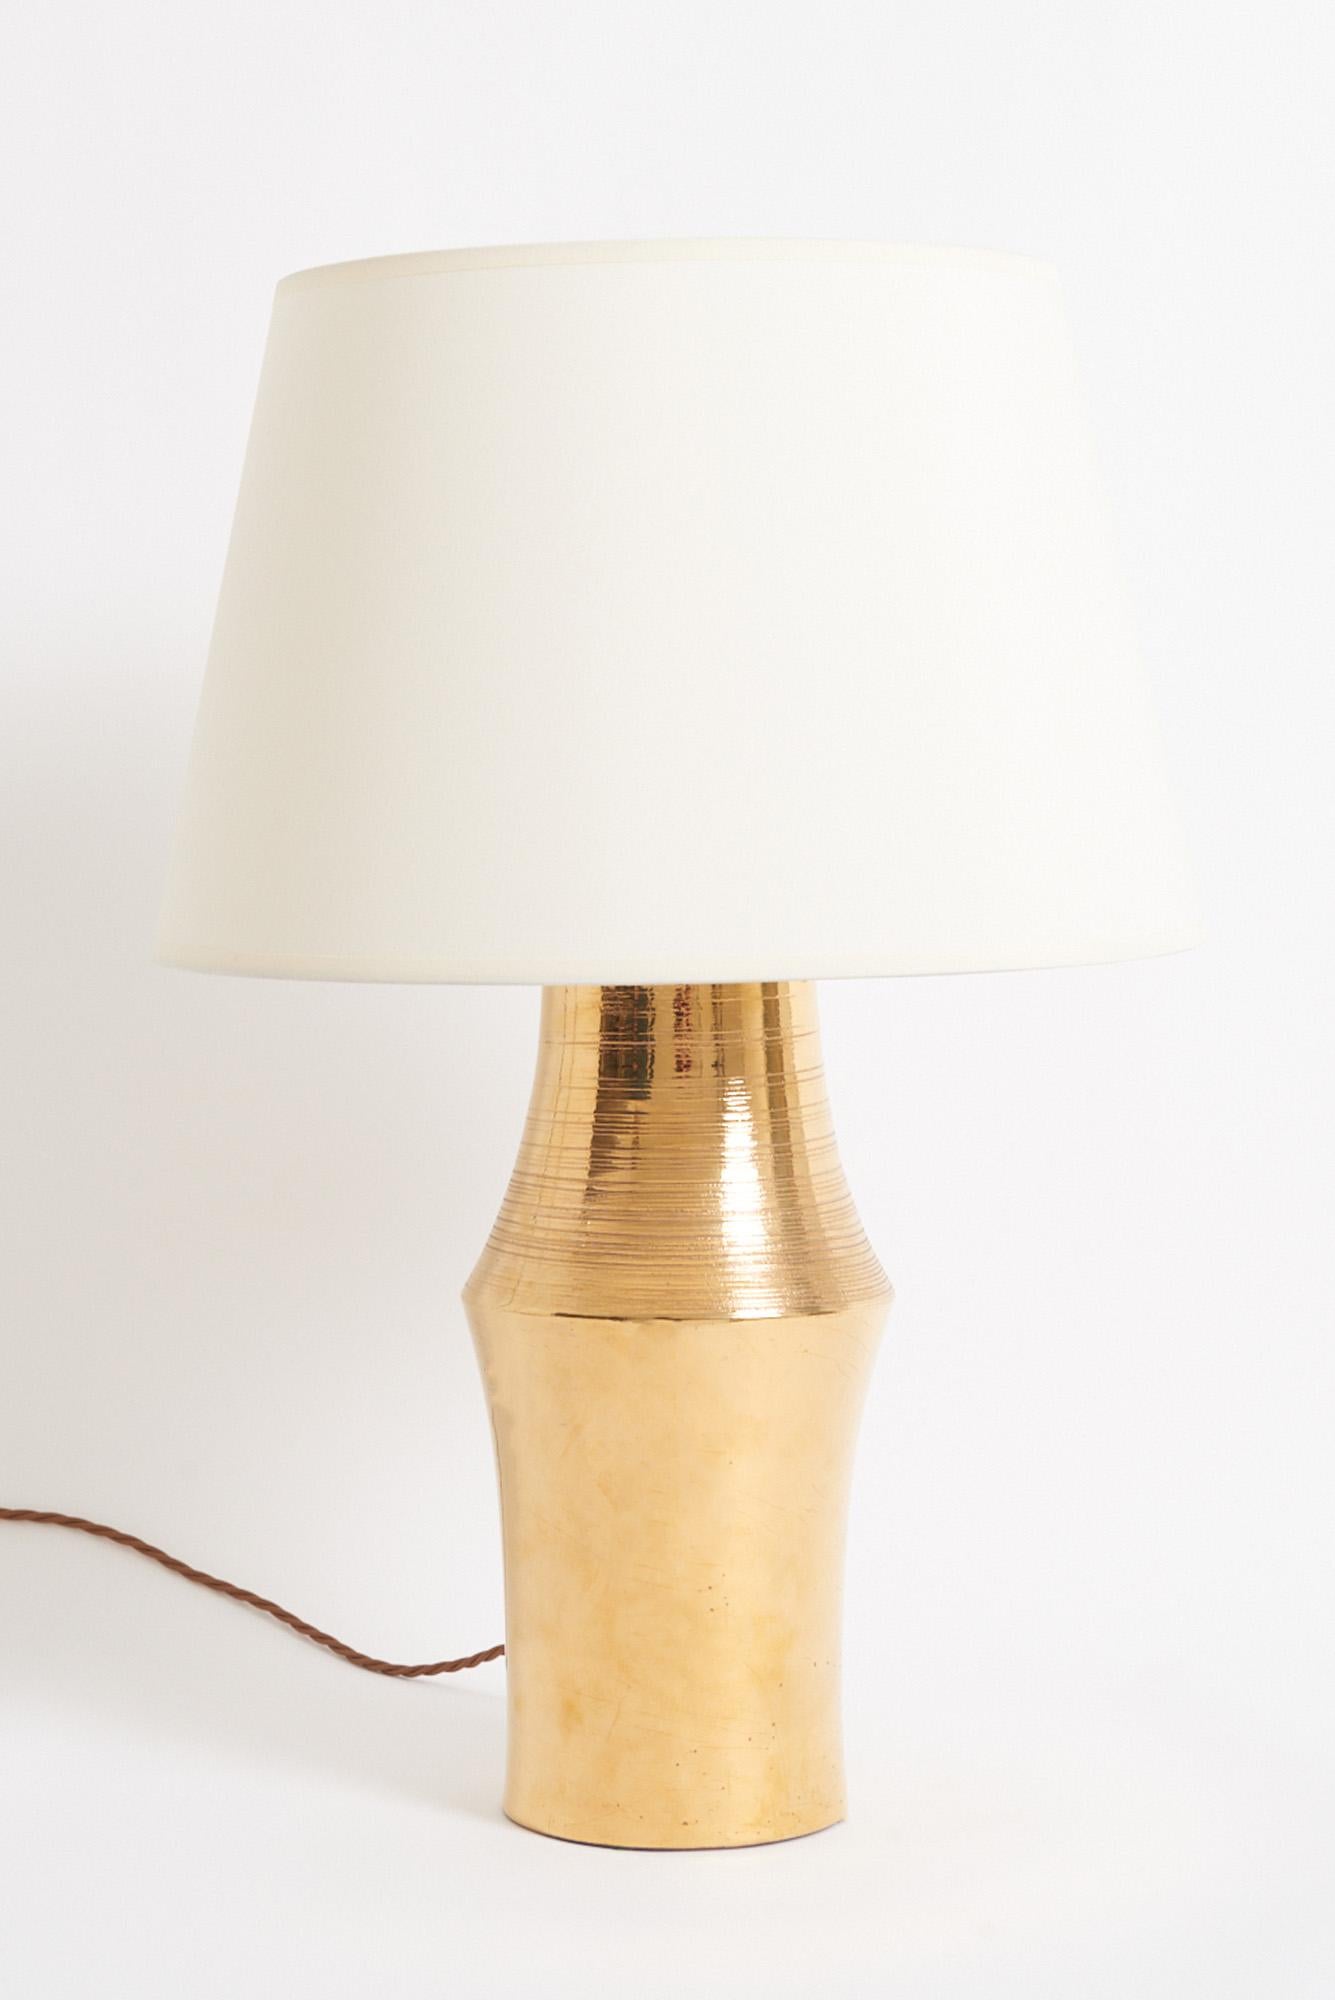 Lampe de table en céramique à glaçure dorée, fabriquée par Bitossi Italie pour Miranda AB en Suède, années 1970.
Avec l'abat-jour : 59 cm de haut par 41 cm de diamètre 
Base de la lampe uniquement : 41 cm de haut par 19 cm de diamètre